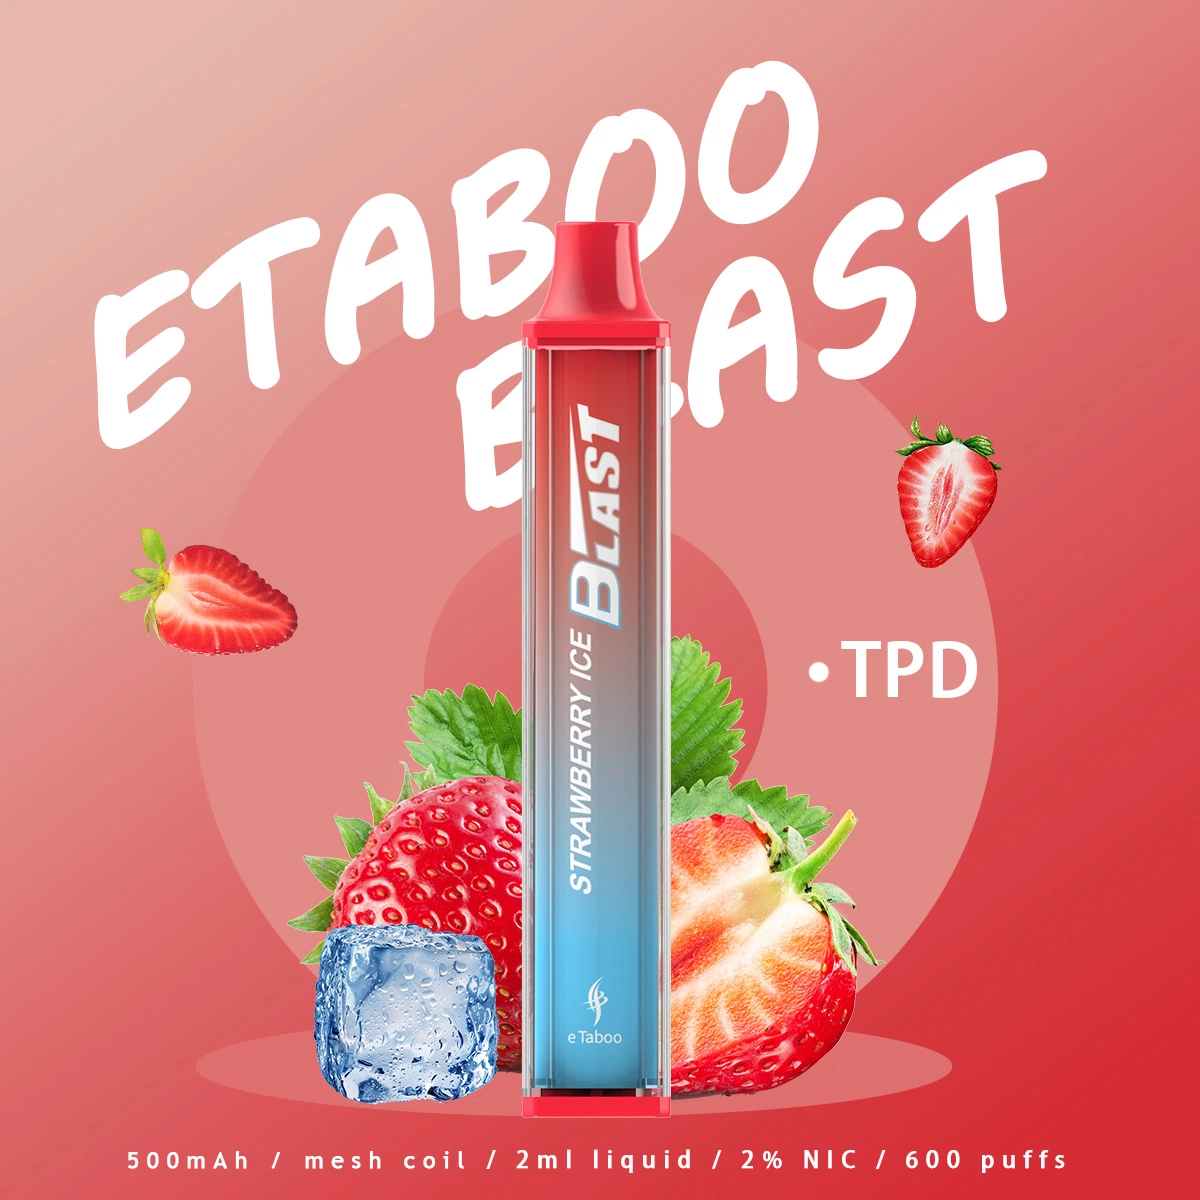 Mejor precio mayorista Tpd Etaboo Blast 2ml 600 inhalaciones de Vape Ecig desechables